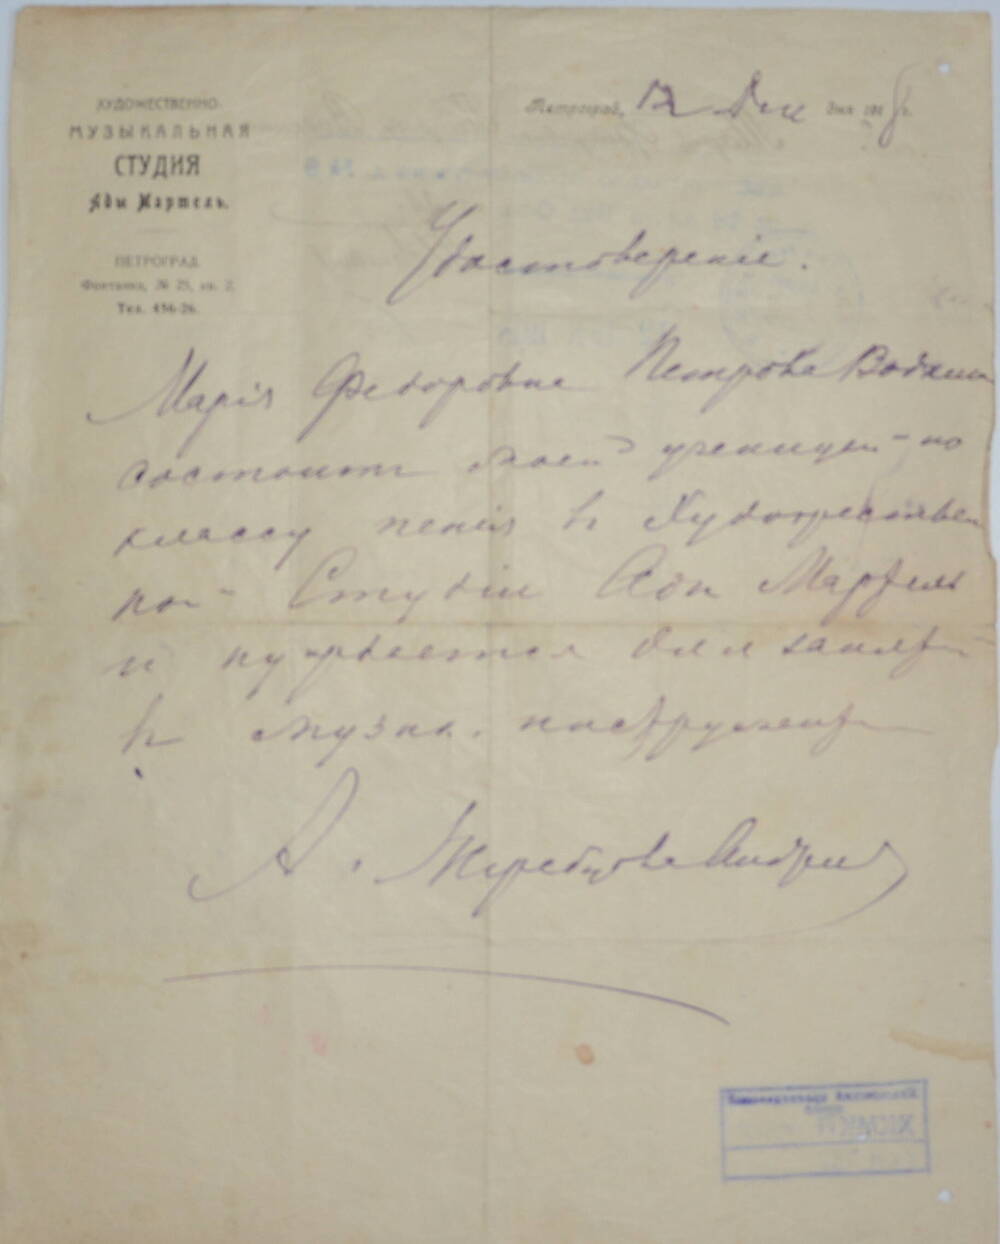 Удостоверение от 12 декабря 1918 г., выданное М.Ф. Петровой-Водкиной